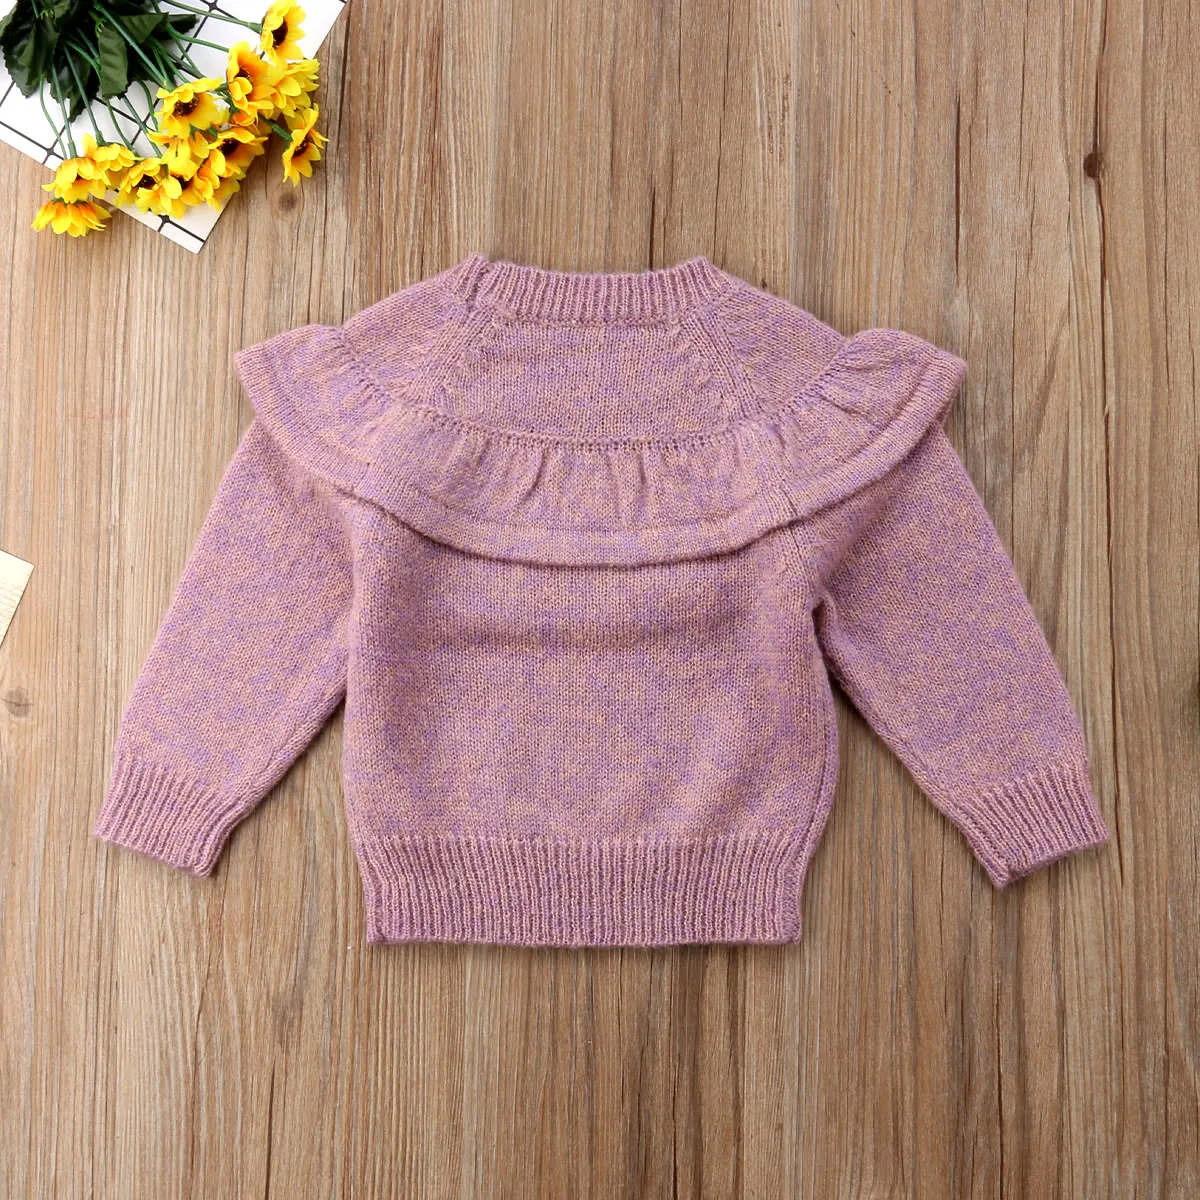 2018 свитер для новорожденных и маленьких девочек Теплый Зимний пуловер с оборками